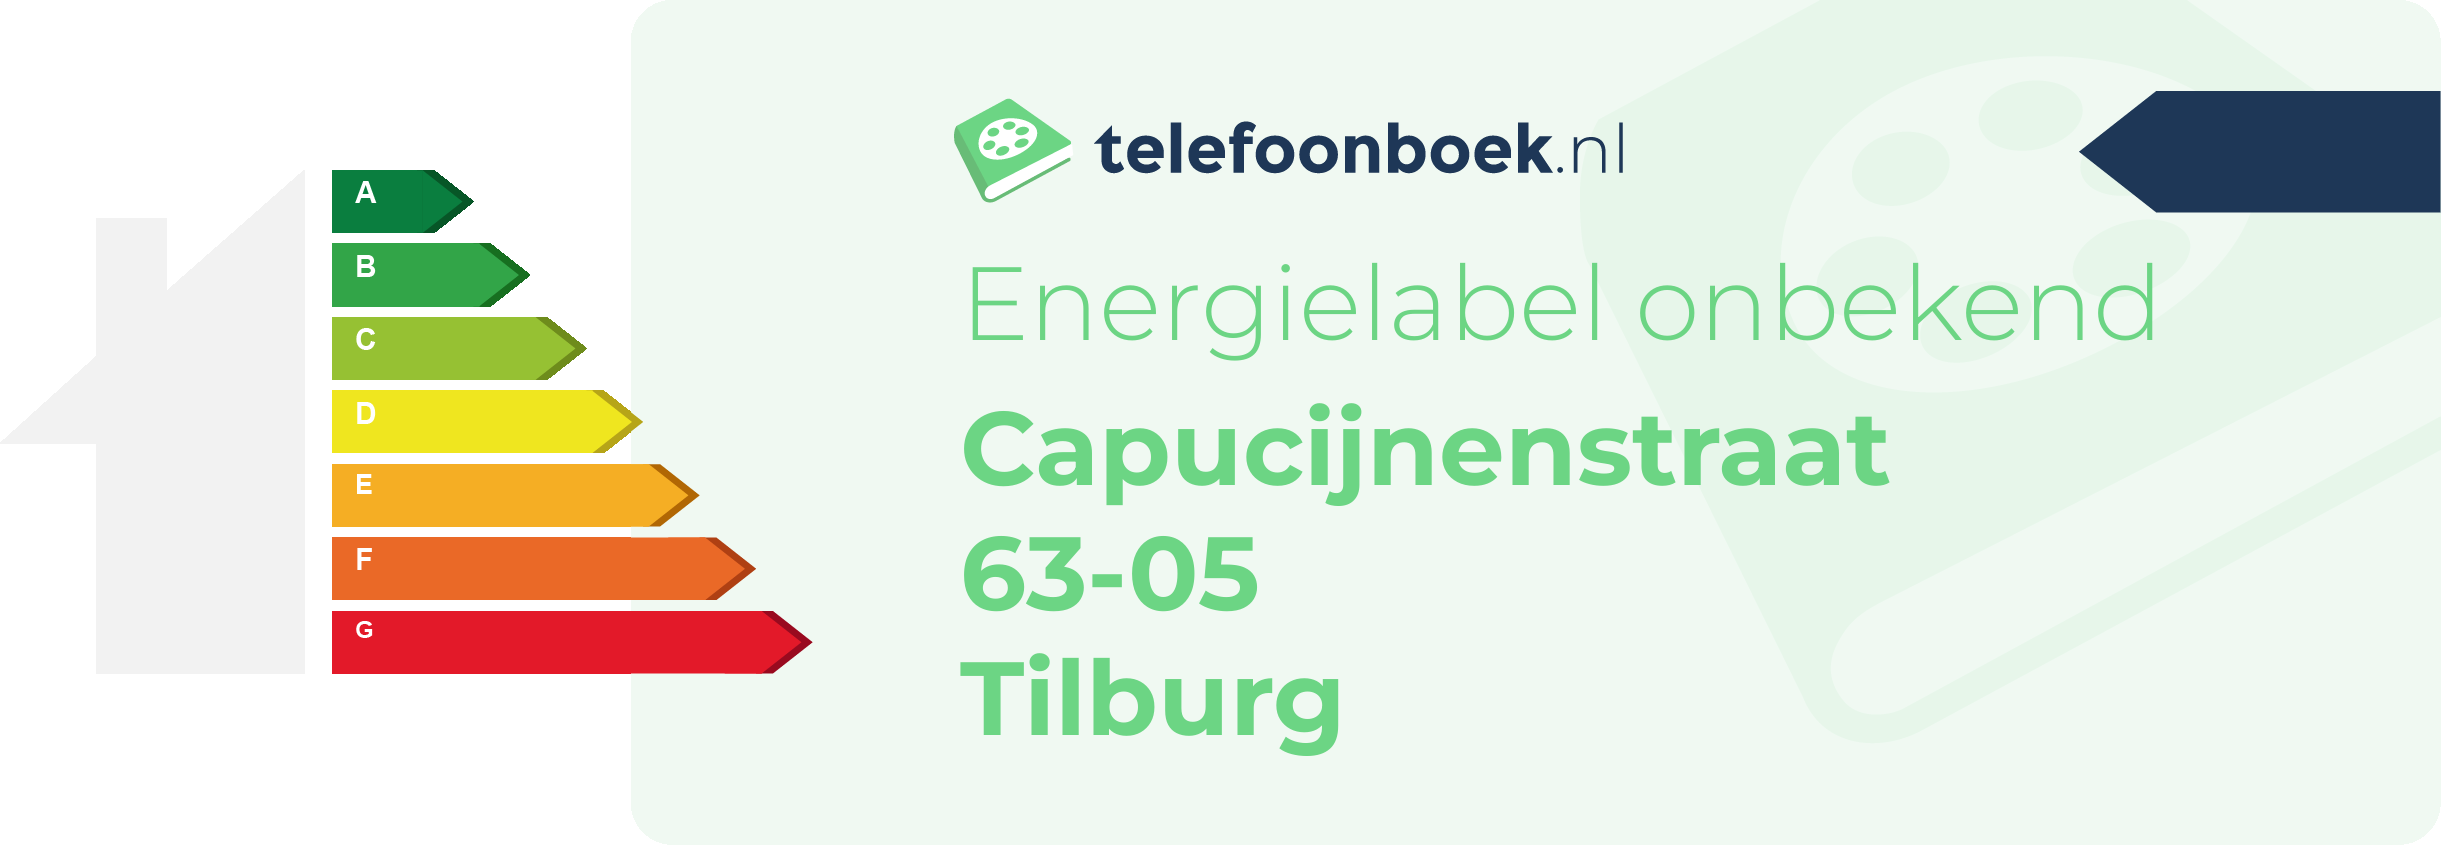 Energielabel Capucijnenstraat 63-05 Tilburg